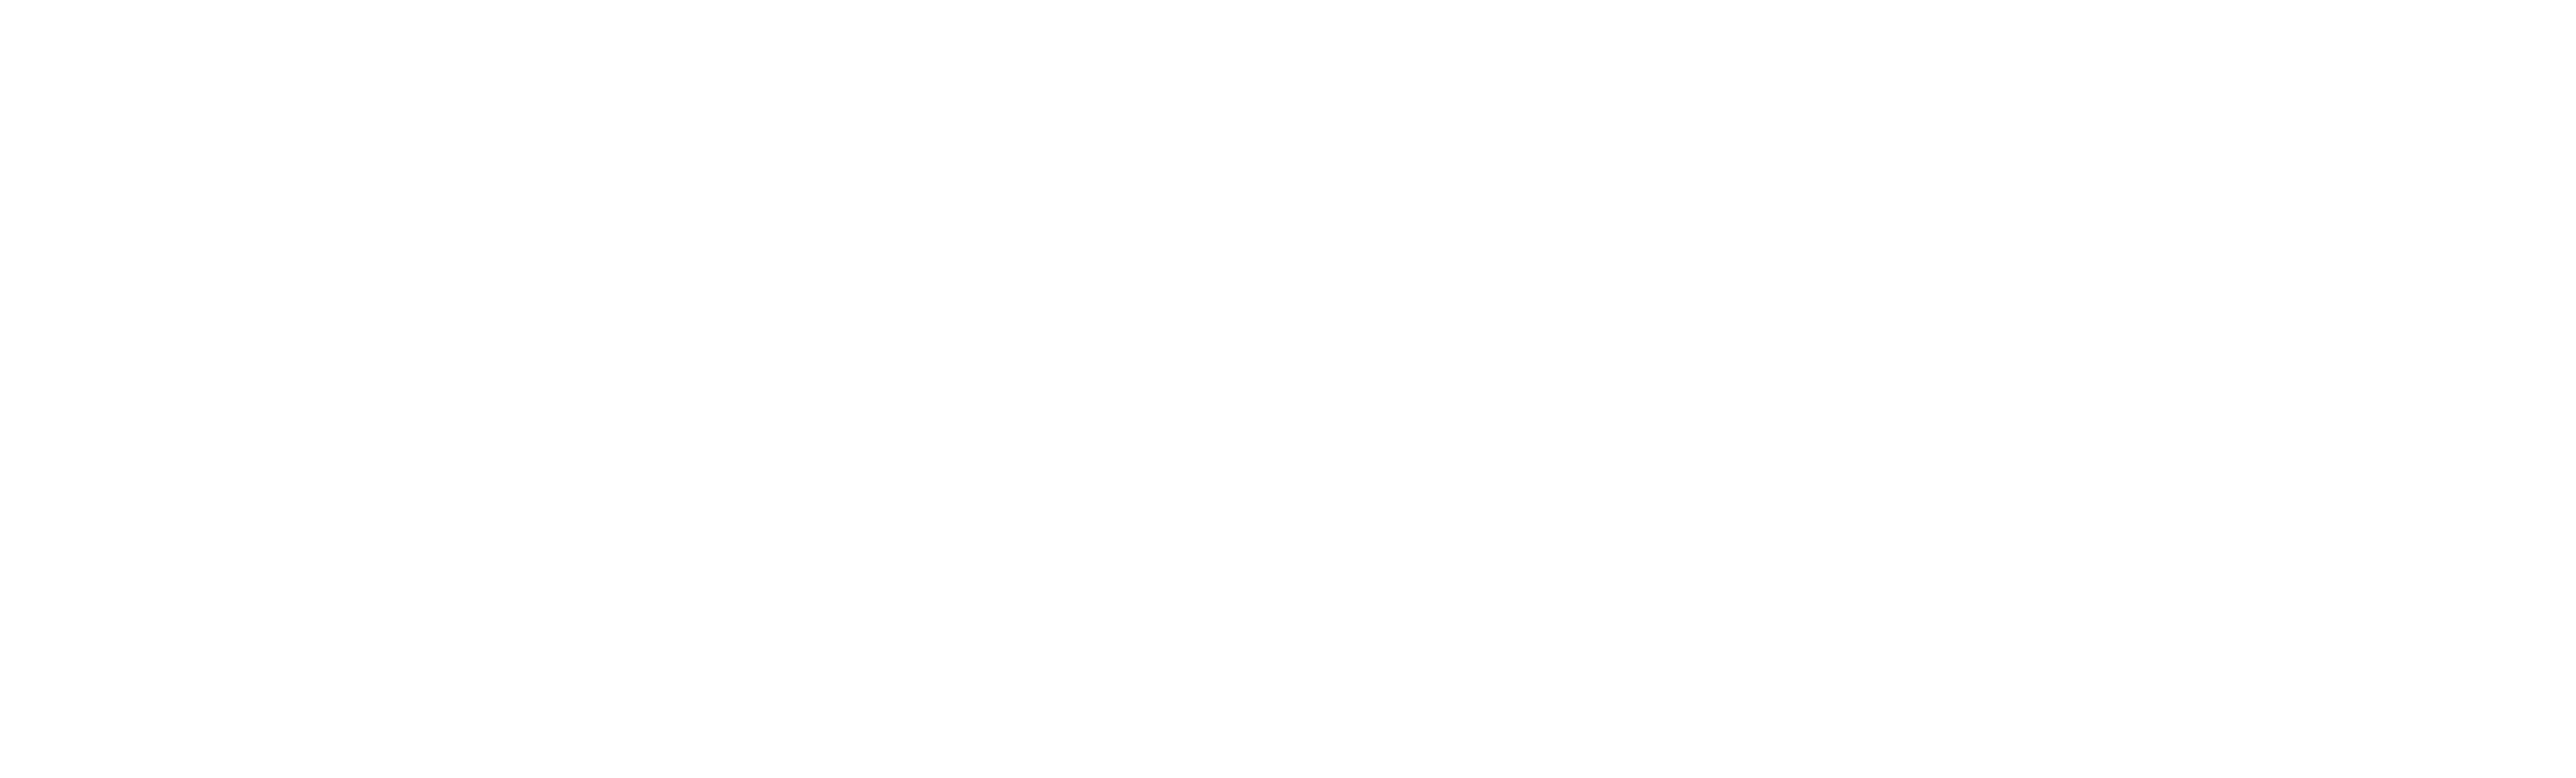 Boardwalk Cafe and Games logo